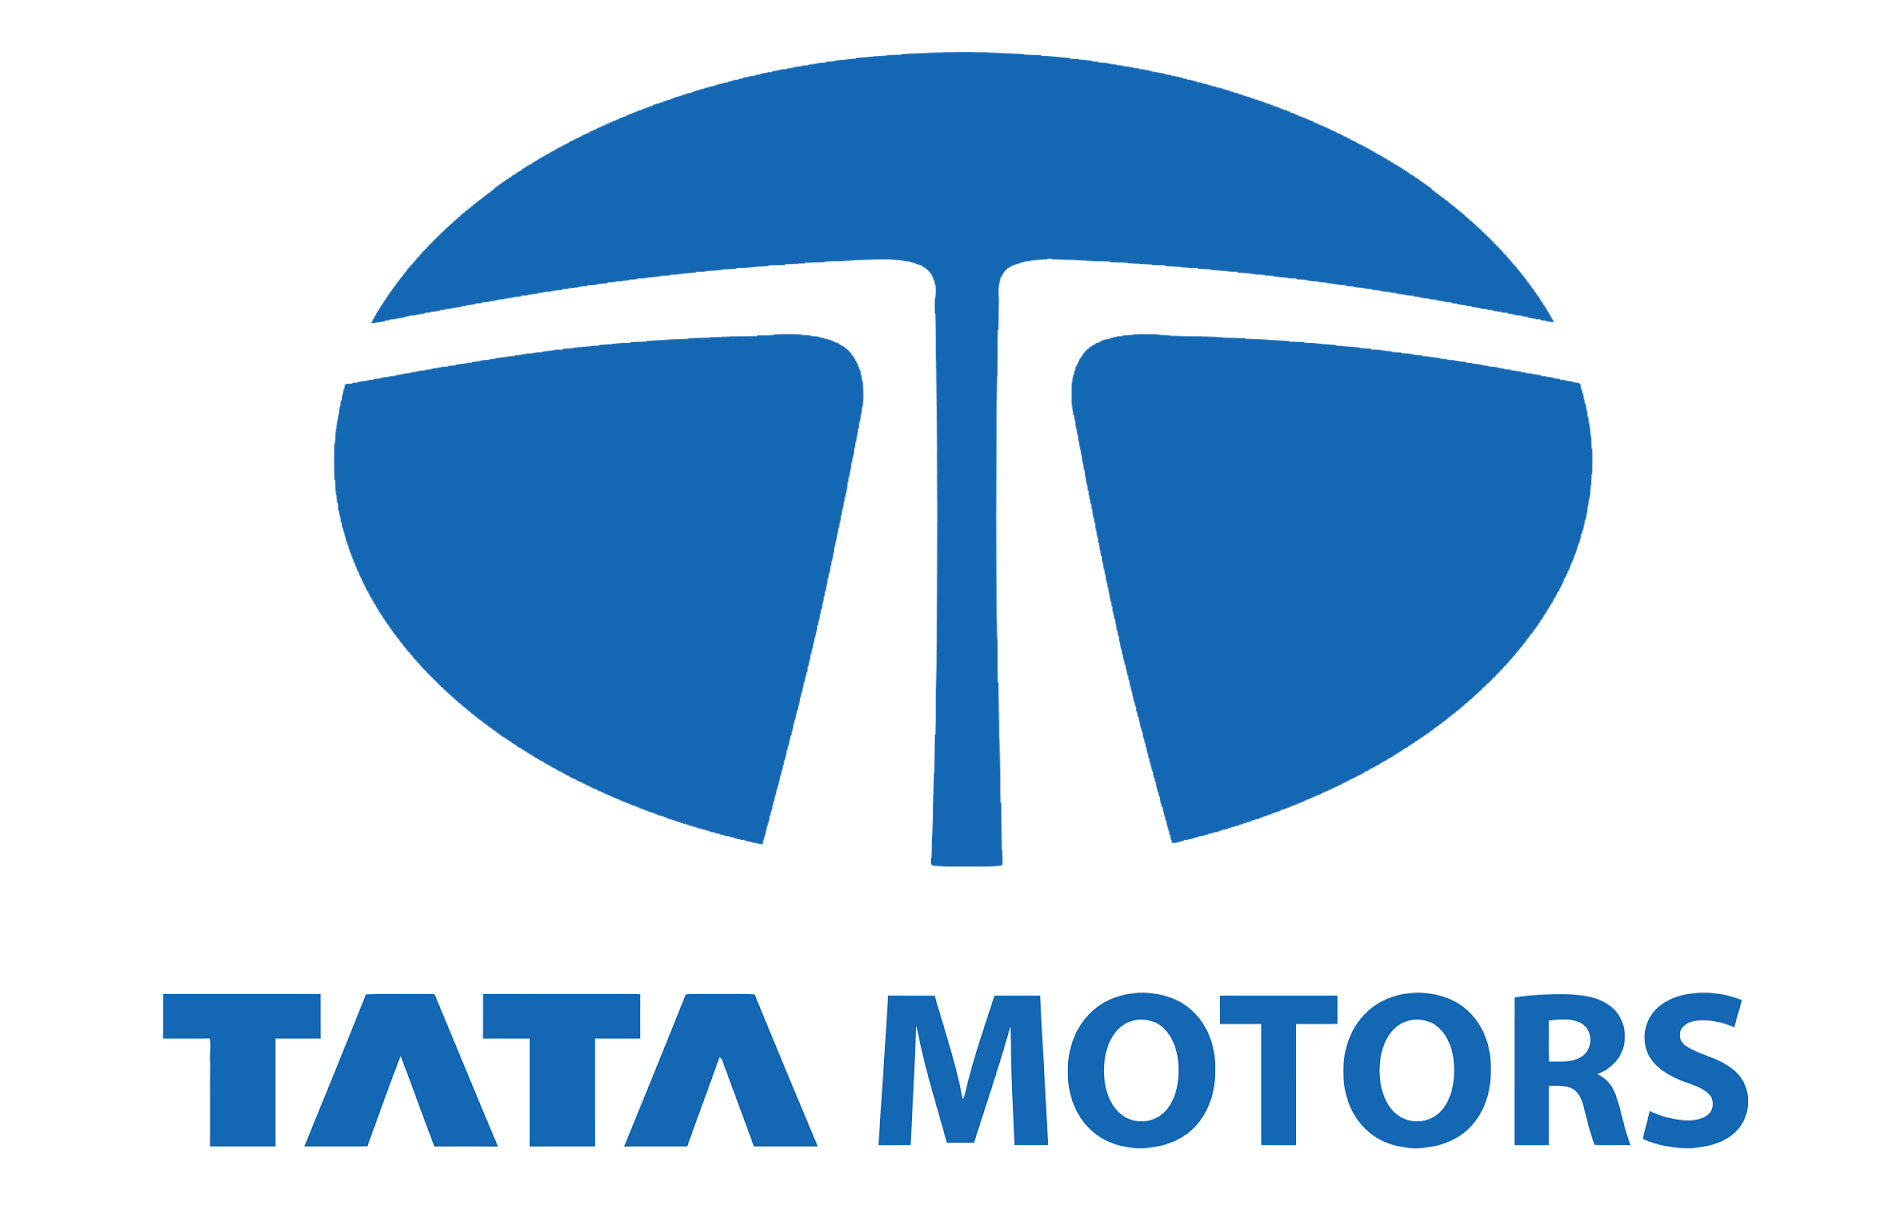 Tata Motors Cars Showroom - Tiwari Automobiles Logo